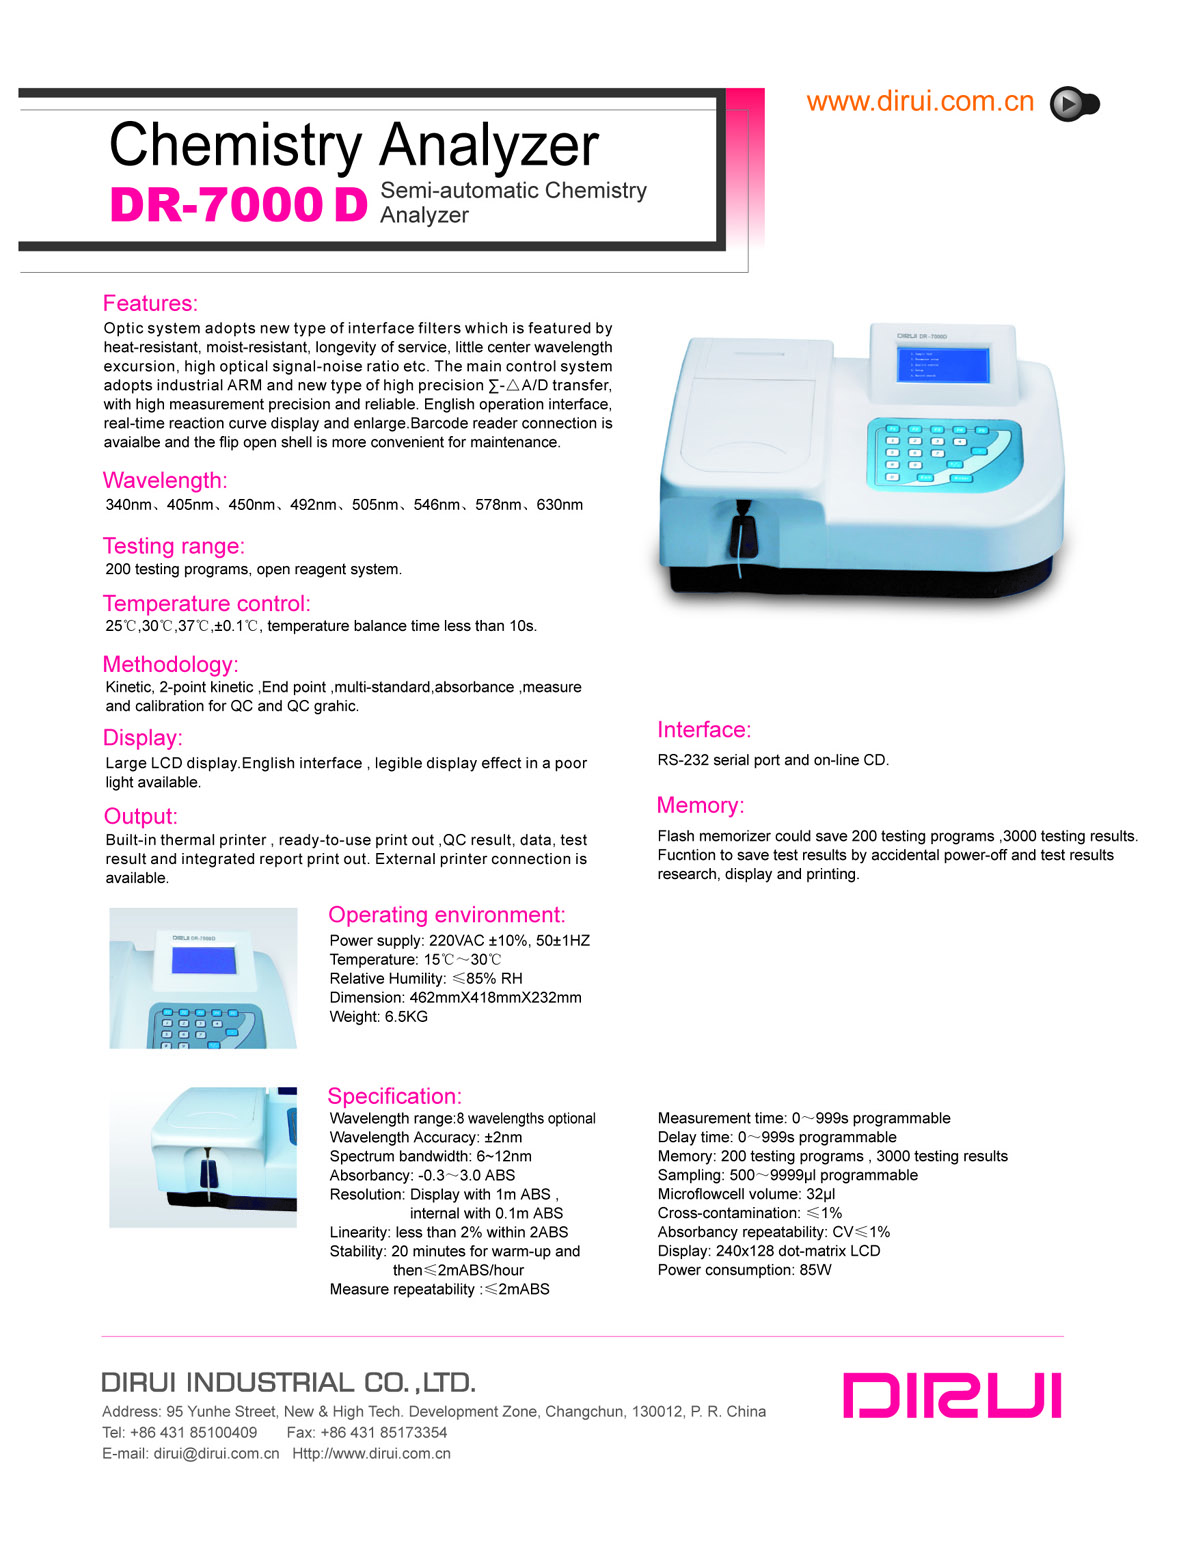 DR7000D Semi-automatic chemistry analyzer